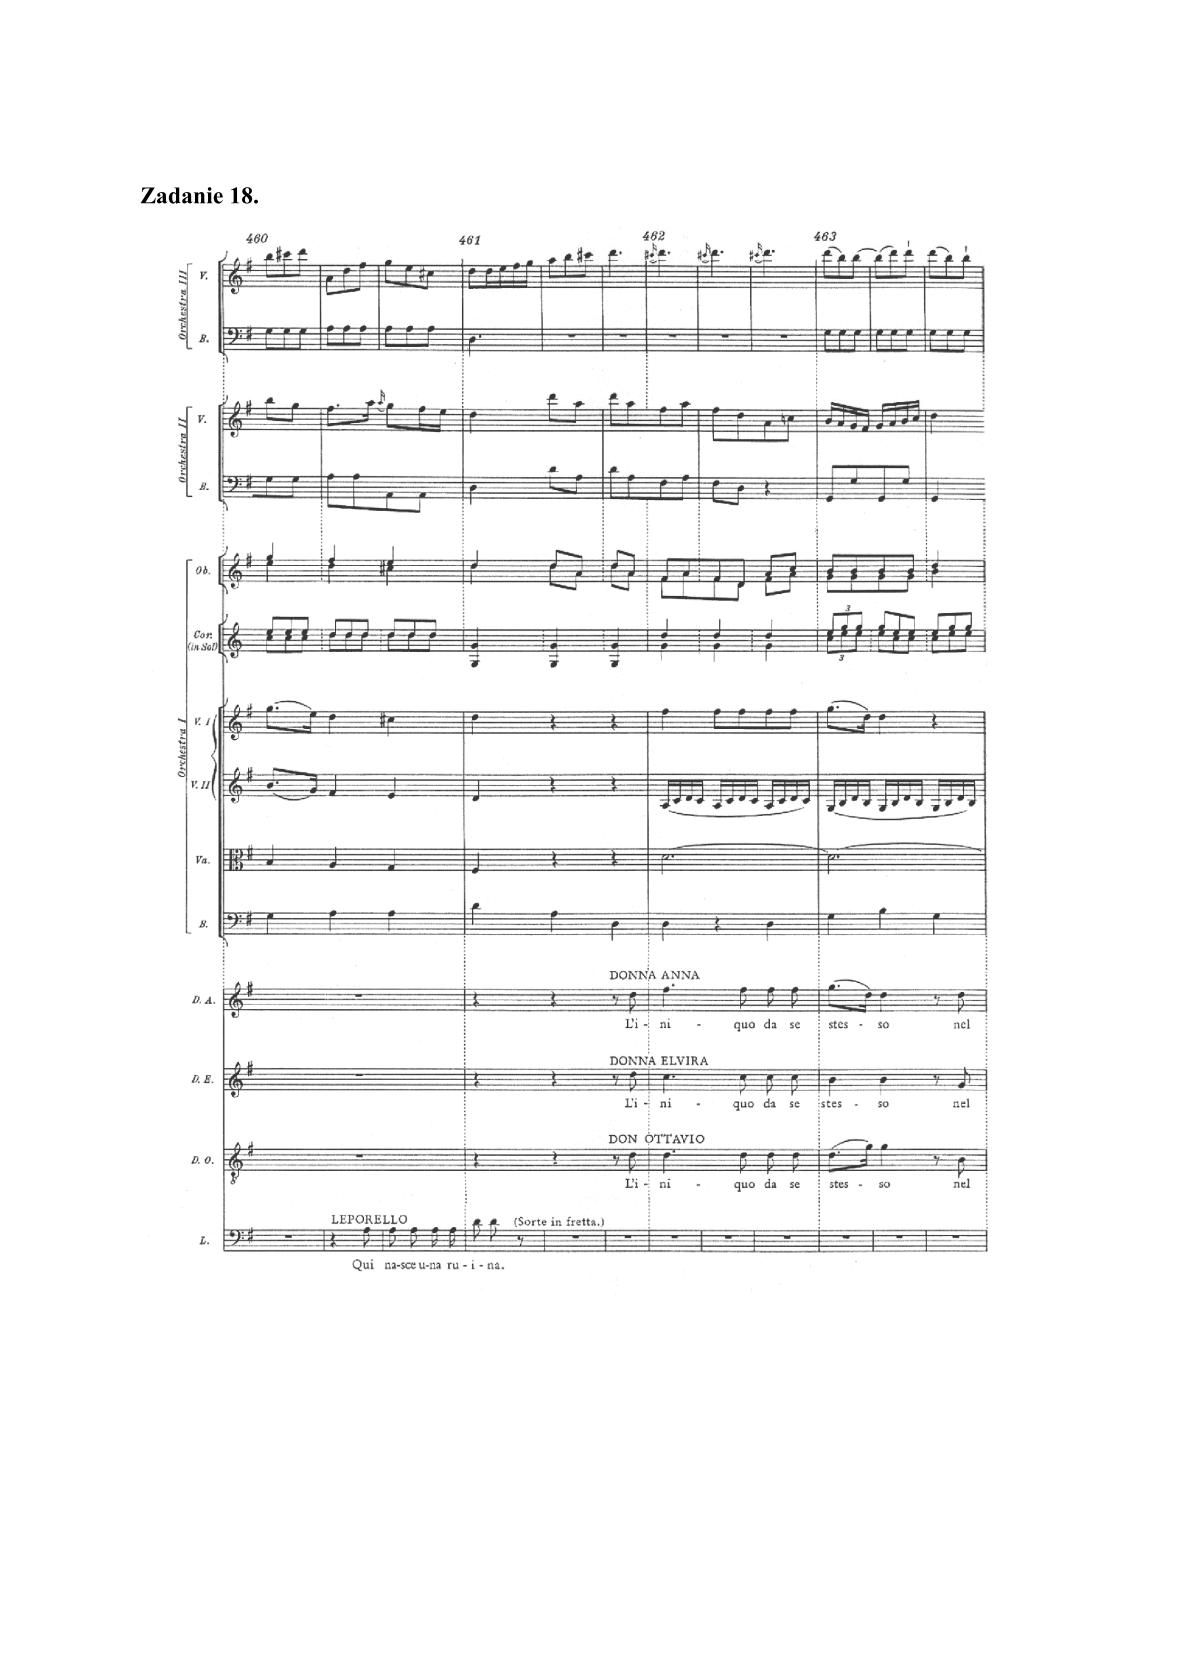 historia-muzyki-przykladowe-nuty-poziom-rozszerzony-matura-2014-str.13